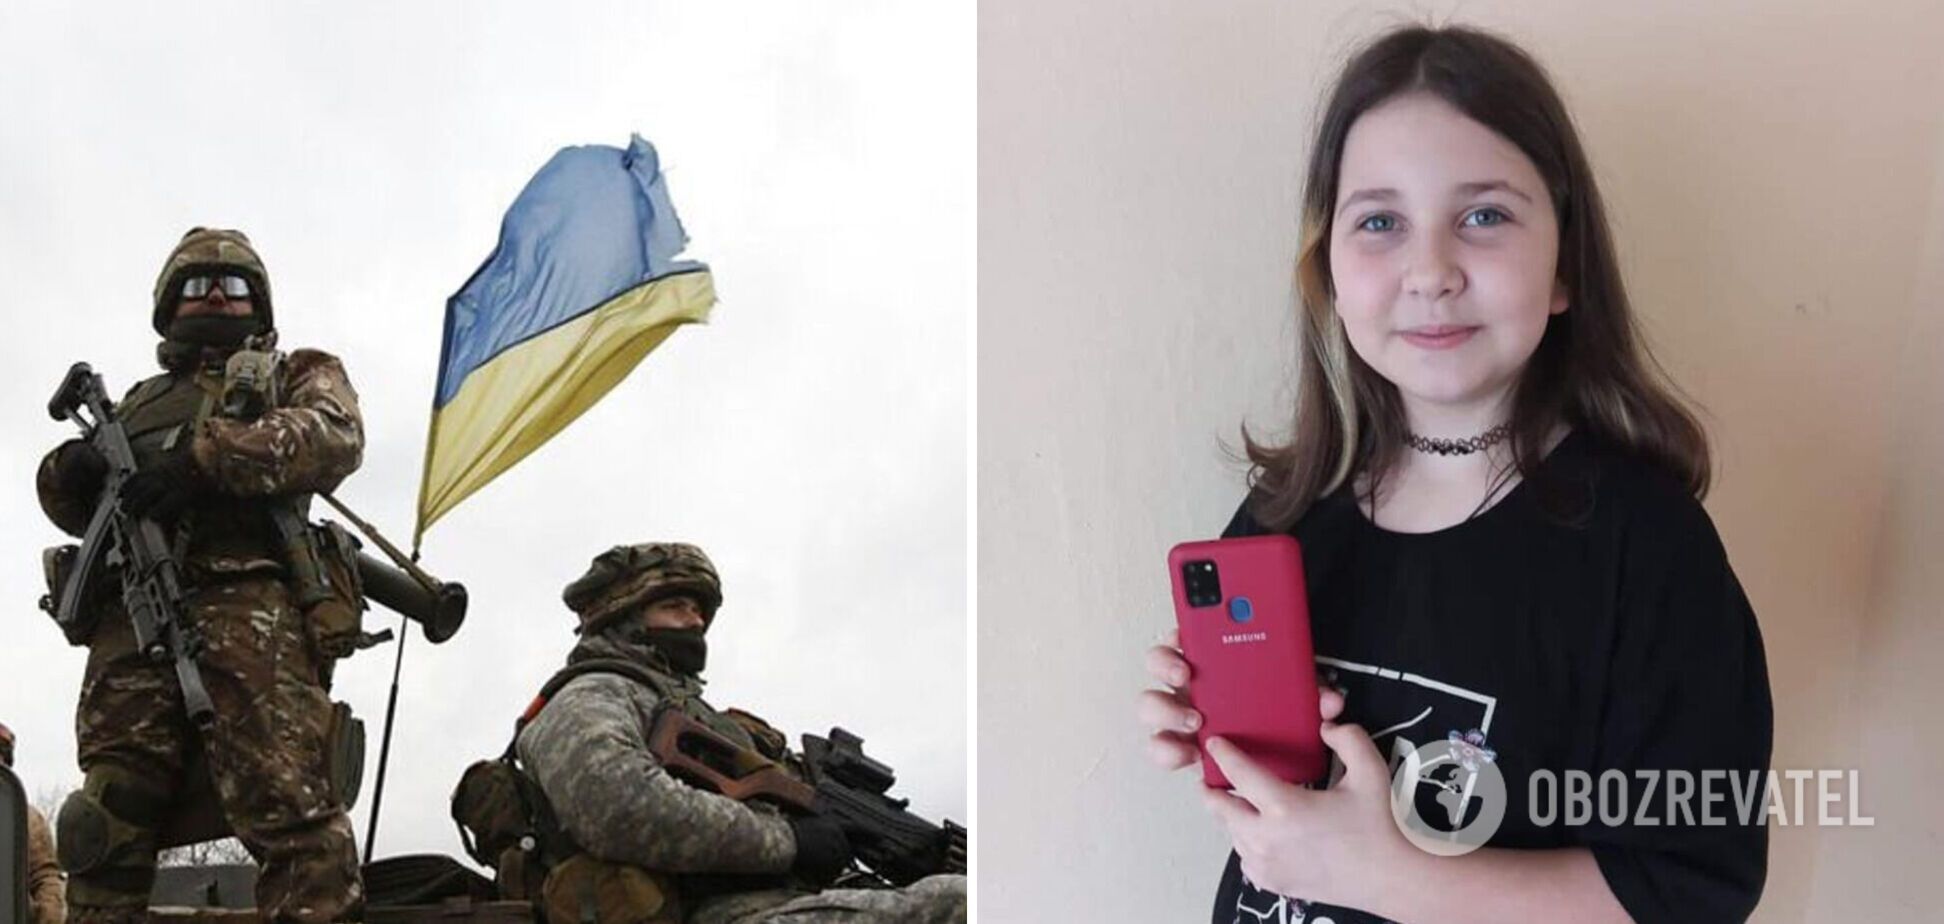 Українські захисники повернули 10-річній дівчинці телефон, який у неї забрали окупанти: його знайшли у полоненого. Фото